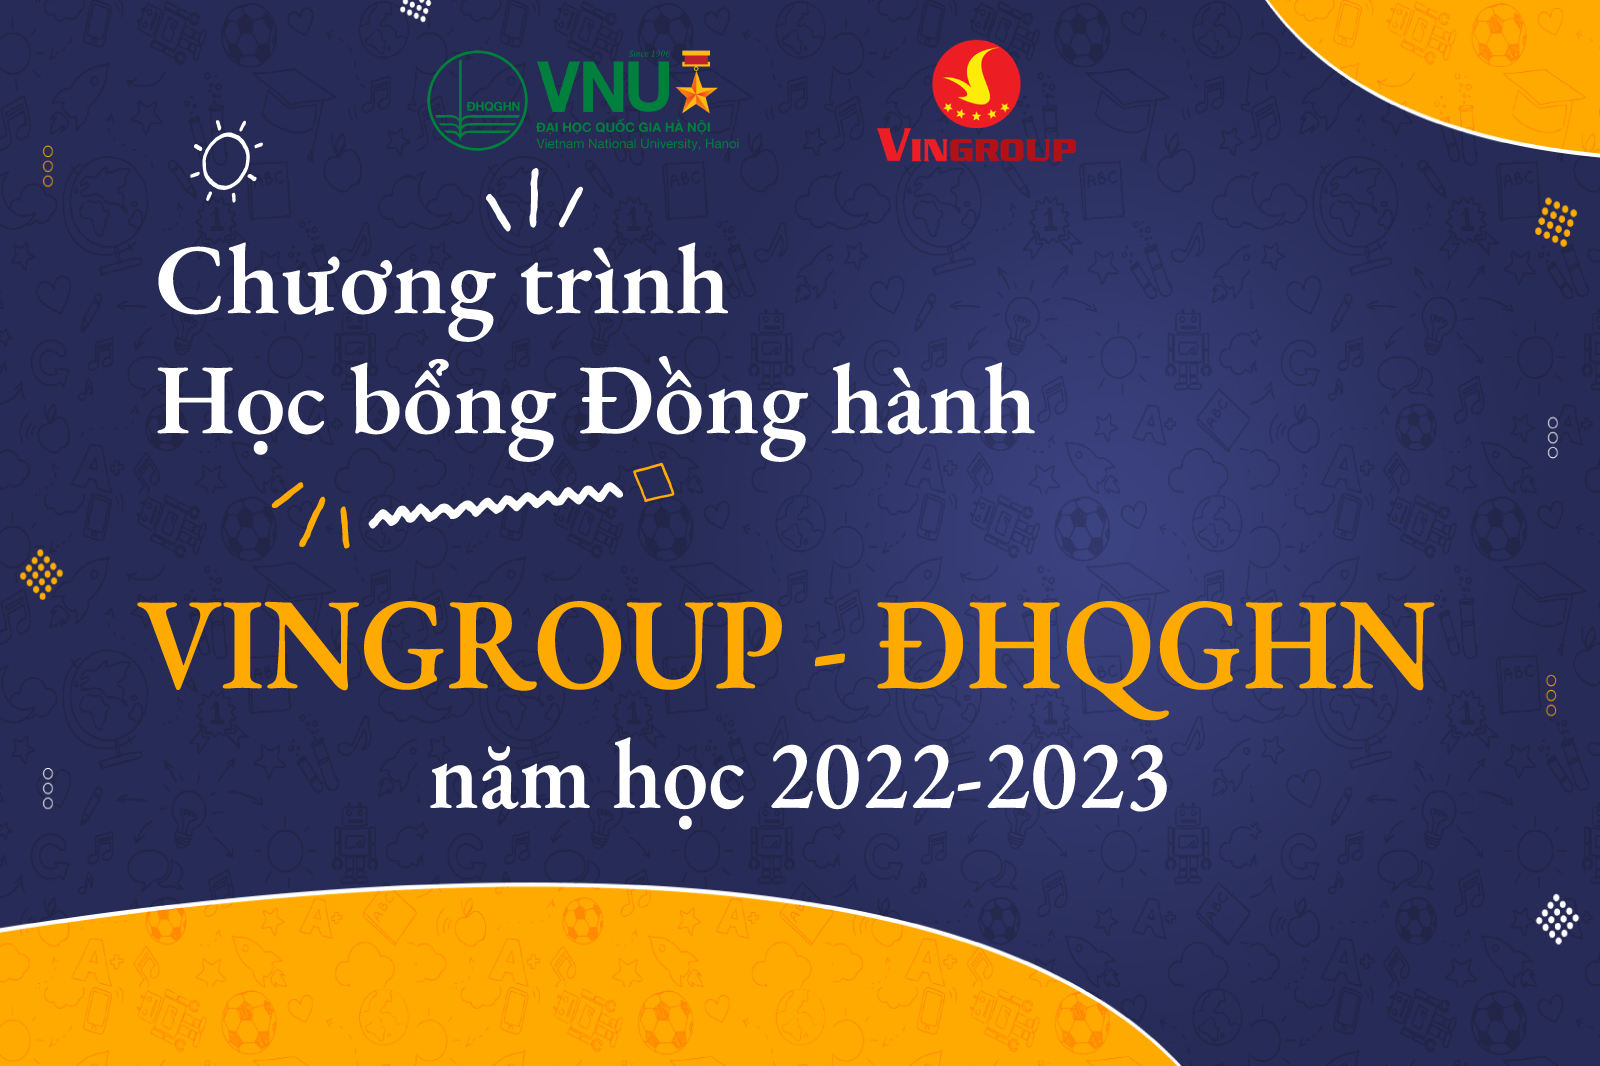 Chương trình Học bổng Đồng hành VinGroup - ĐHQGHN năm học 2022-2023